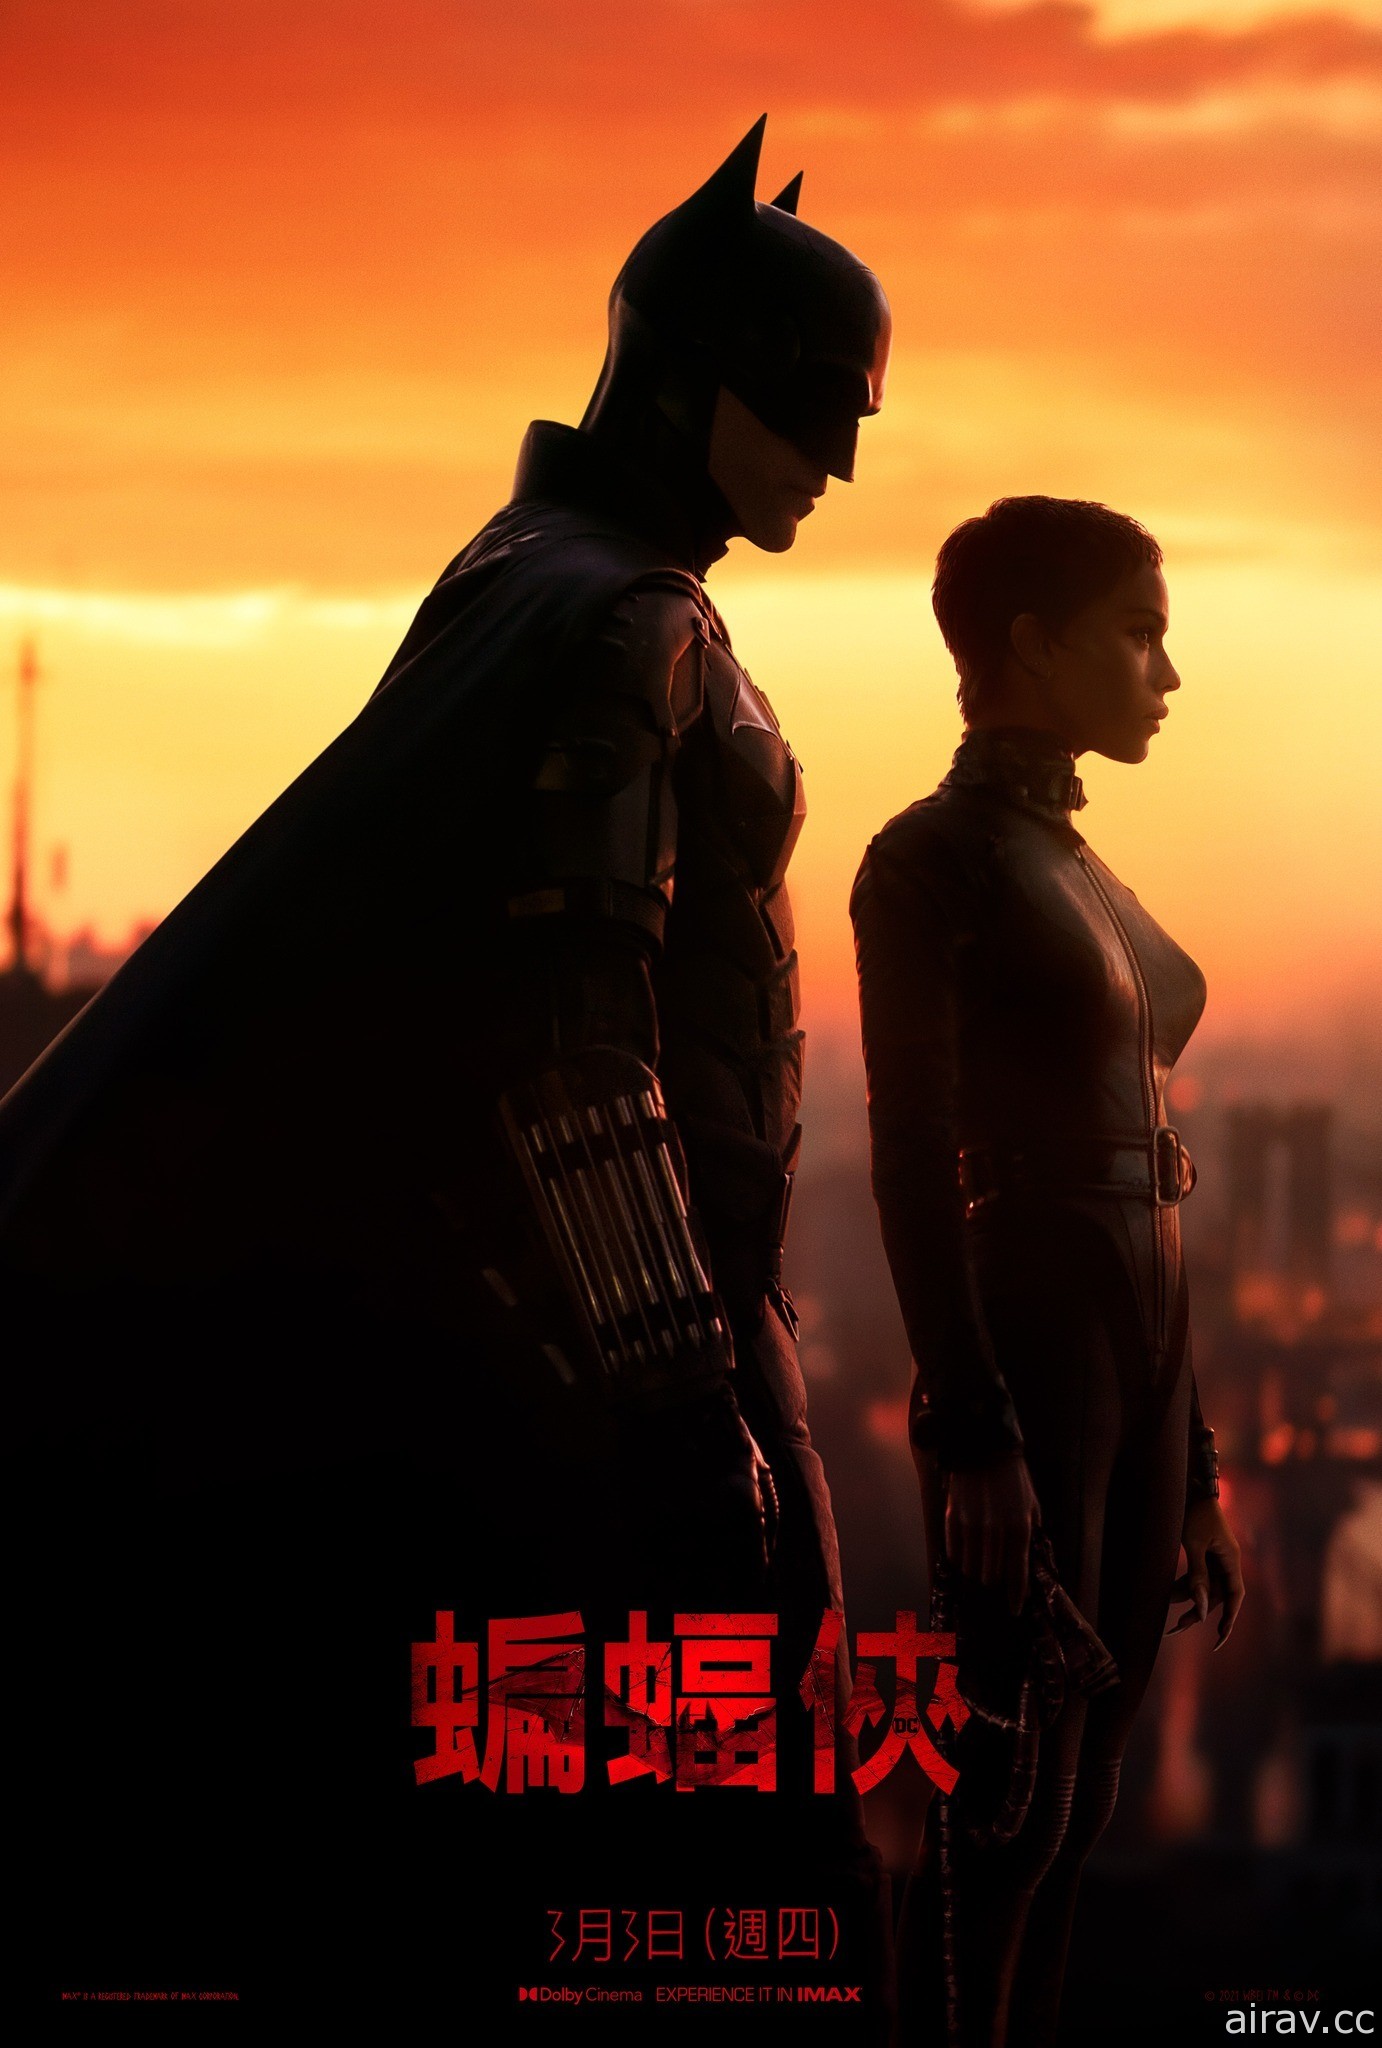 罗伯派汀森《蝙蝠侠》公开最新预告与电影海报